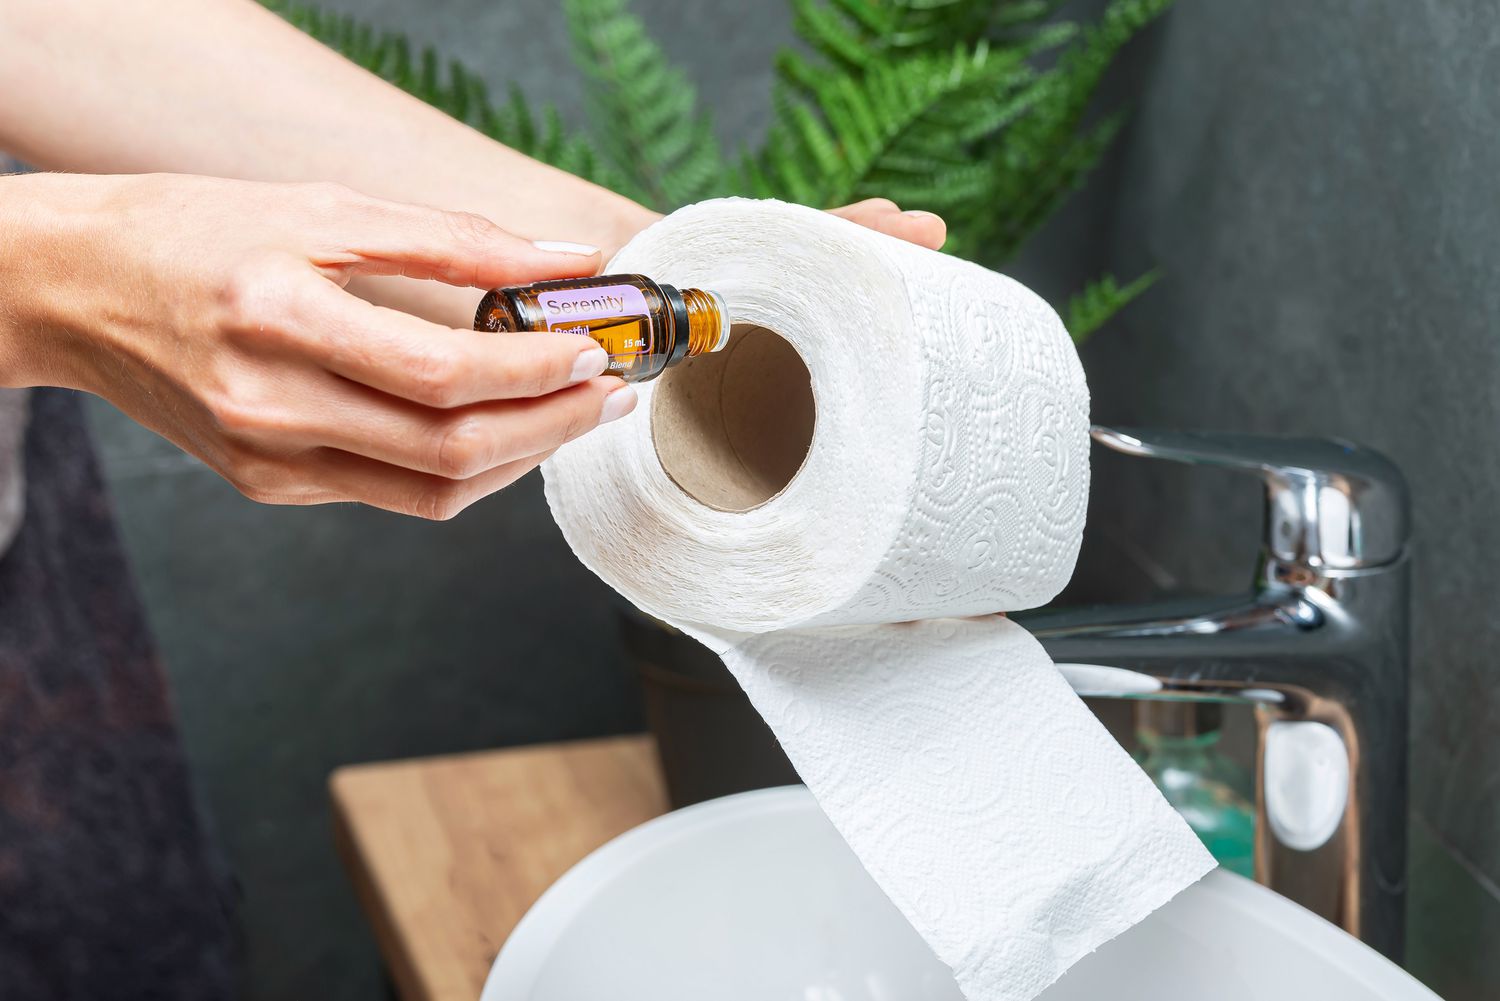 añadir aceite esencial al interior de un rollo de papel higiénico